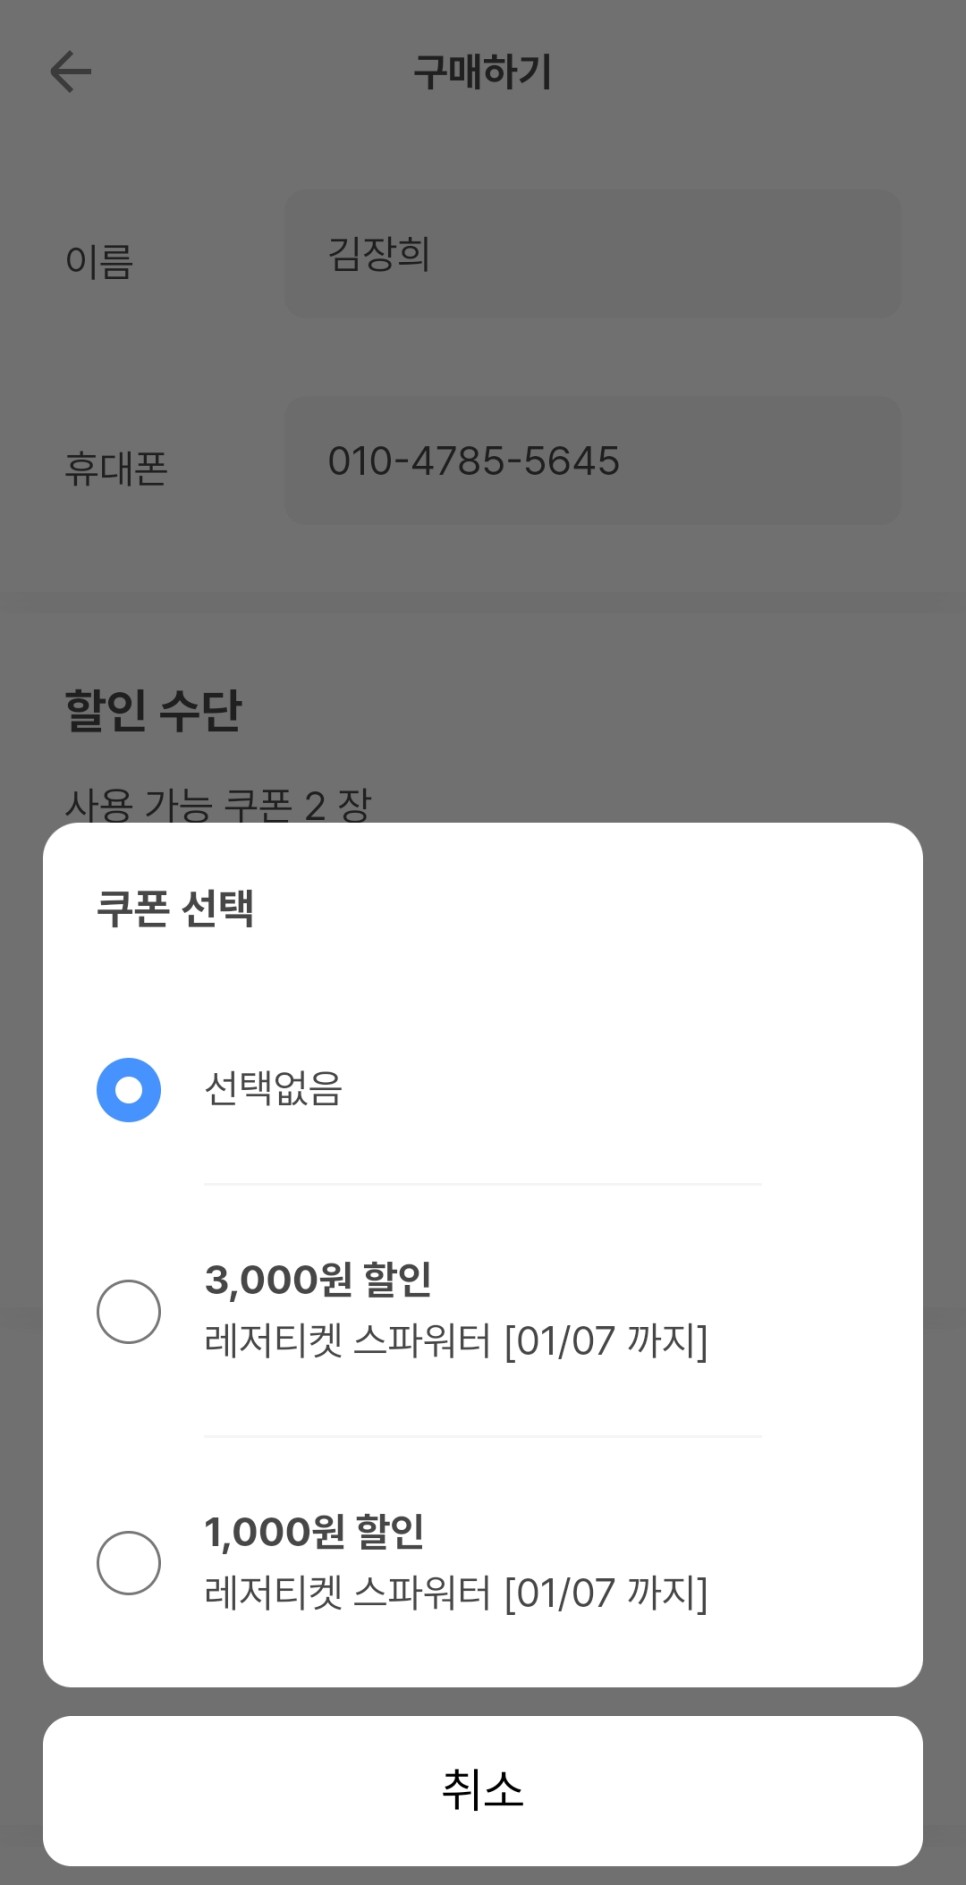 인천 파라다이스 씨메르 온천 수영장과 찜질방 할인 정보 후기